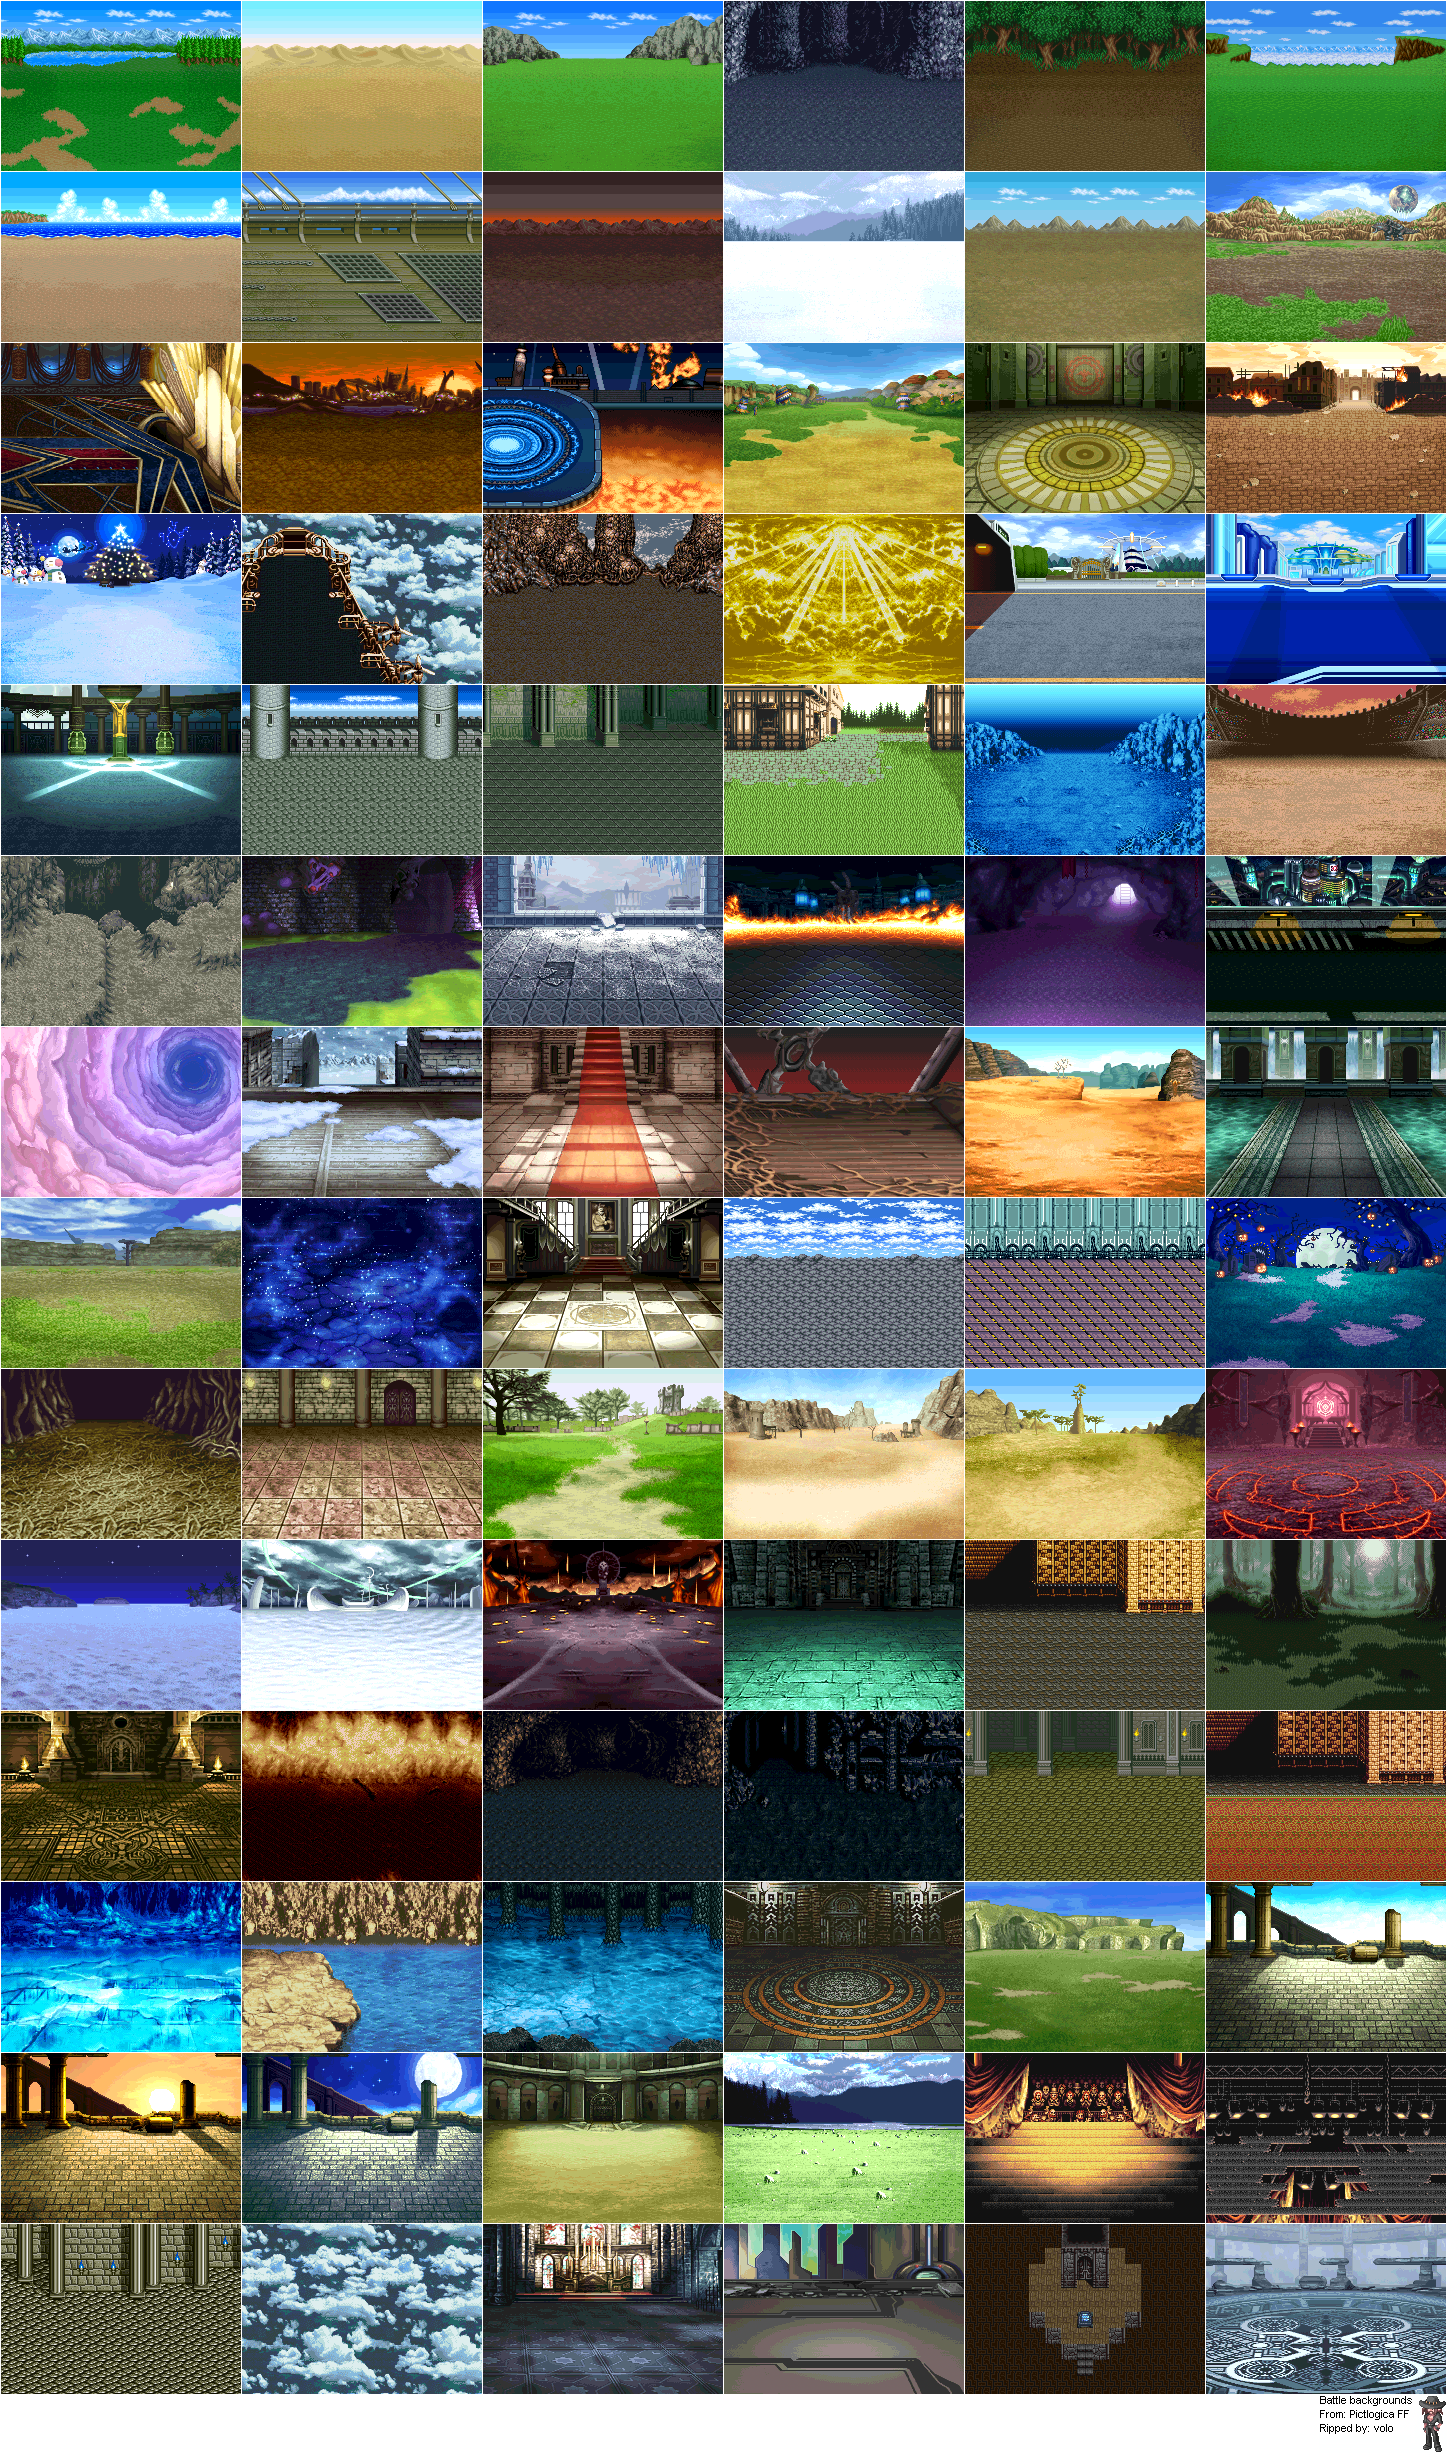 Pictlogica Final Fantasy - Battle Backgrounds